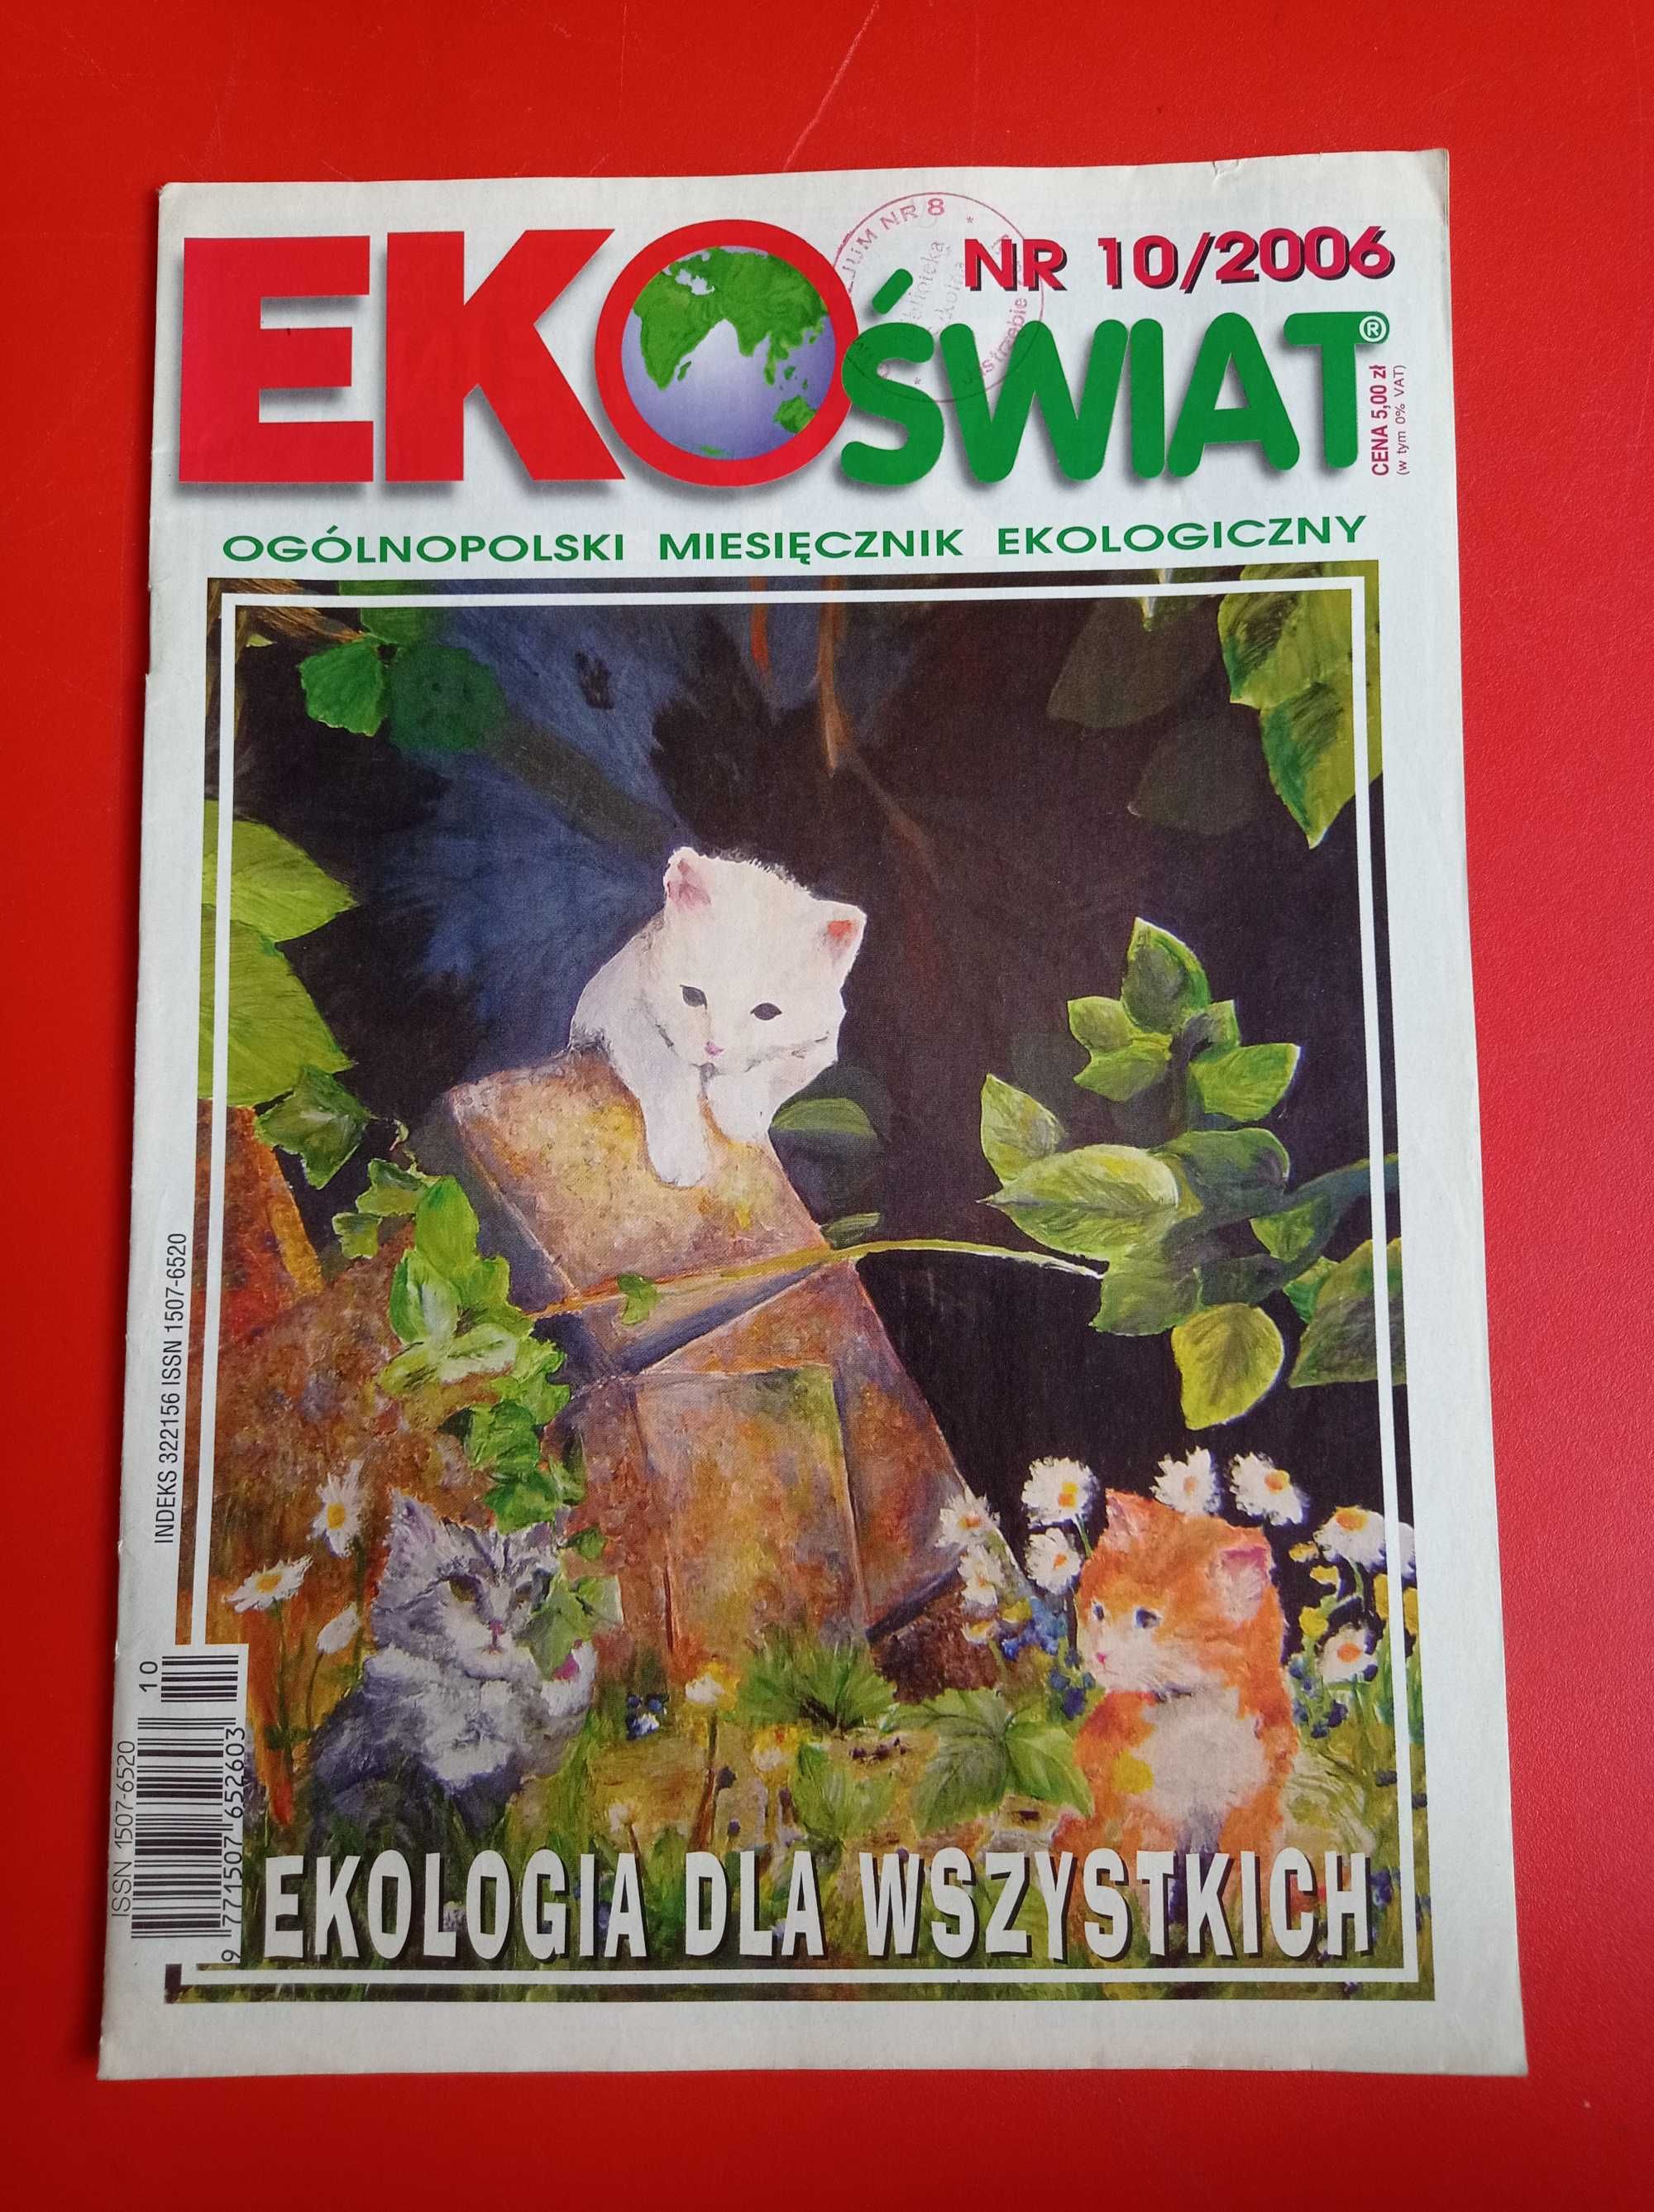 EkoŚwiat, miesięcznik ekologiczny, nr 10/2006, październik 2006